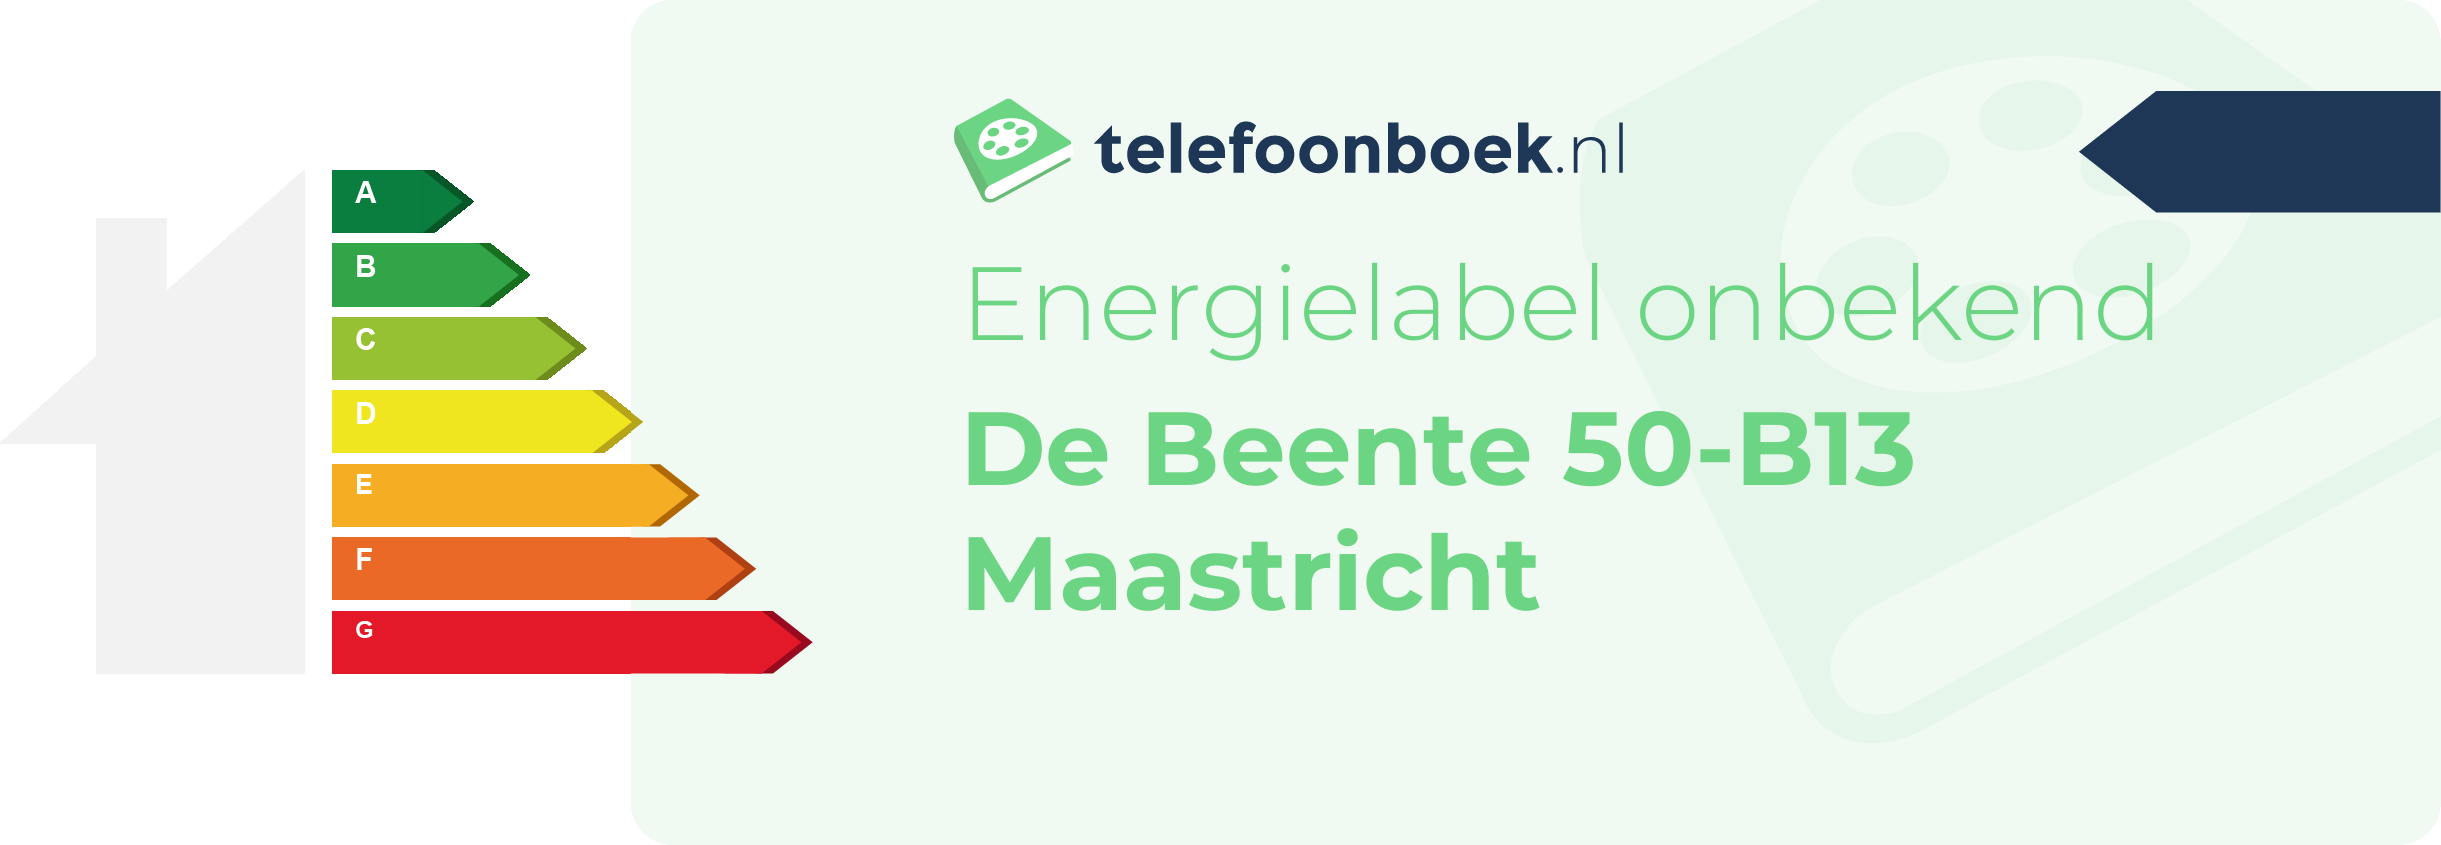 Energielabel De Beente 50-B13 Maastricht